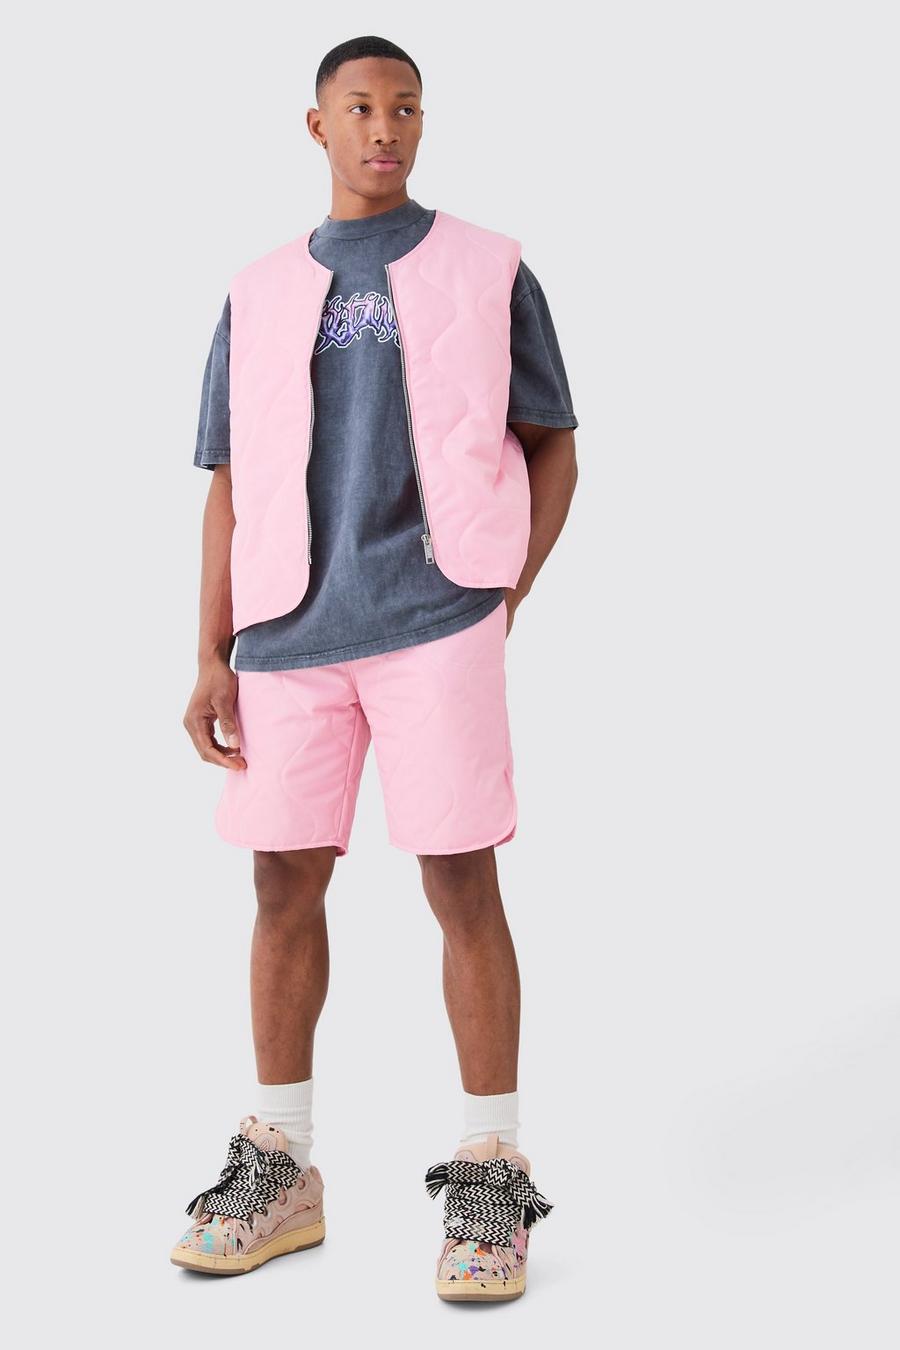 Light pink Gewatteerde Bodywarmer Met Stiksels En Voering En Shorts Set